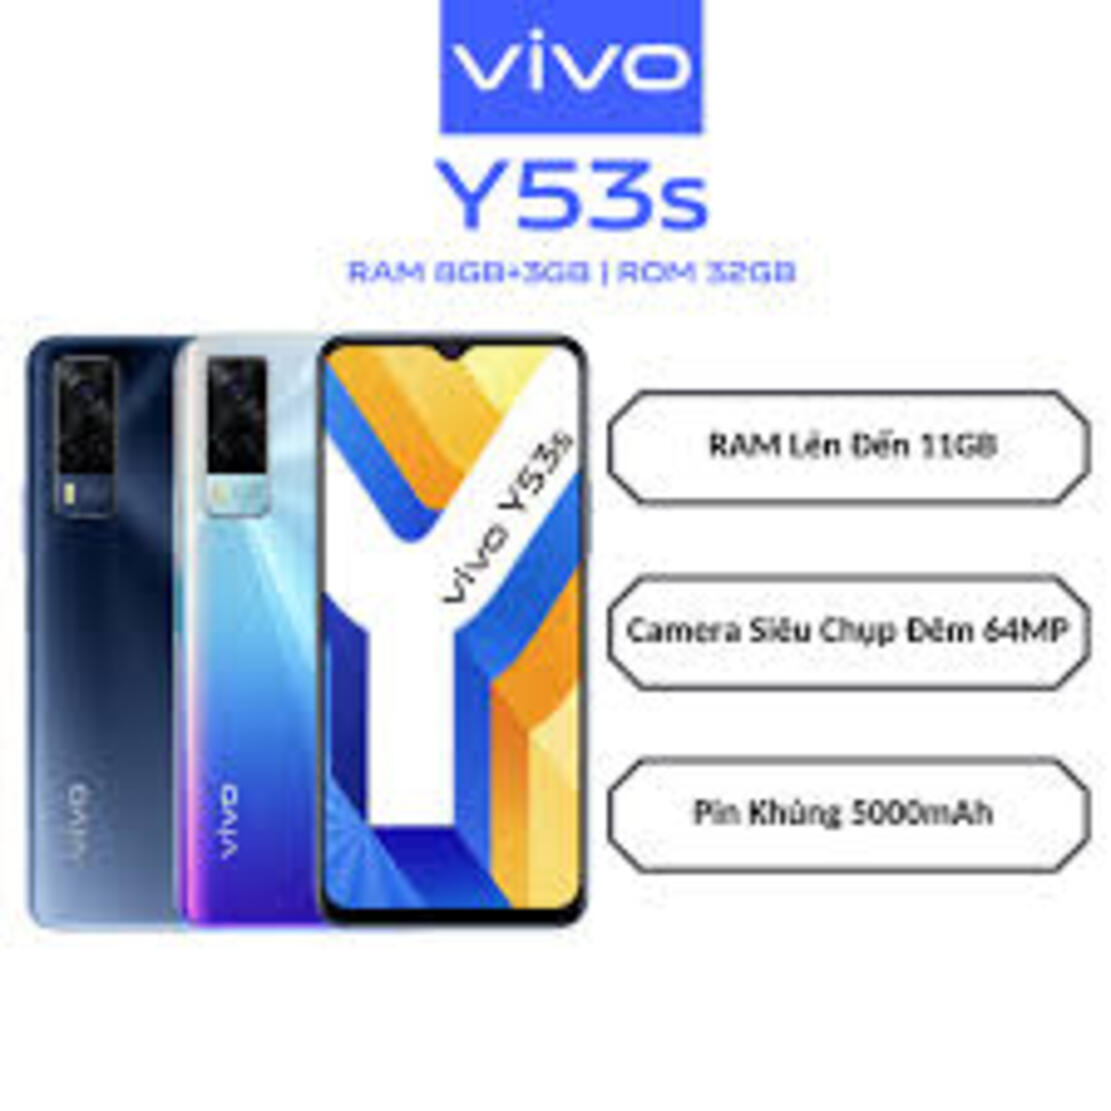 điện thoại Chính Hãng giá rẻ Vivo Y53s 2sim ram 8G/128G, cấu hình siêu khủng long, đánh mọi Game PUBG/Liên Quân/Free Fire siêu mượt